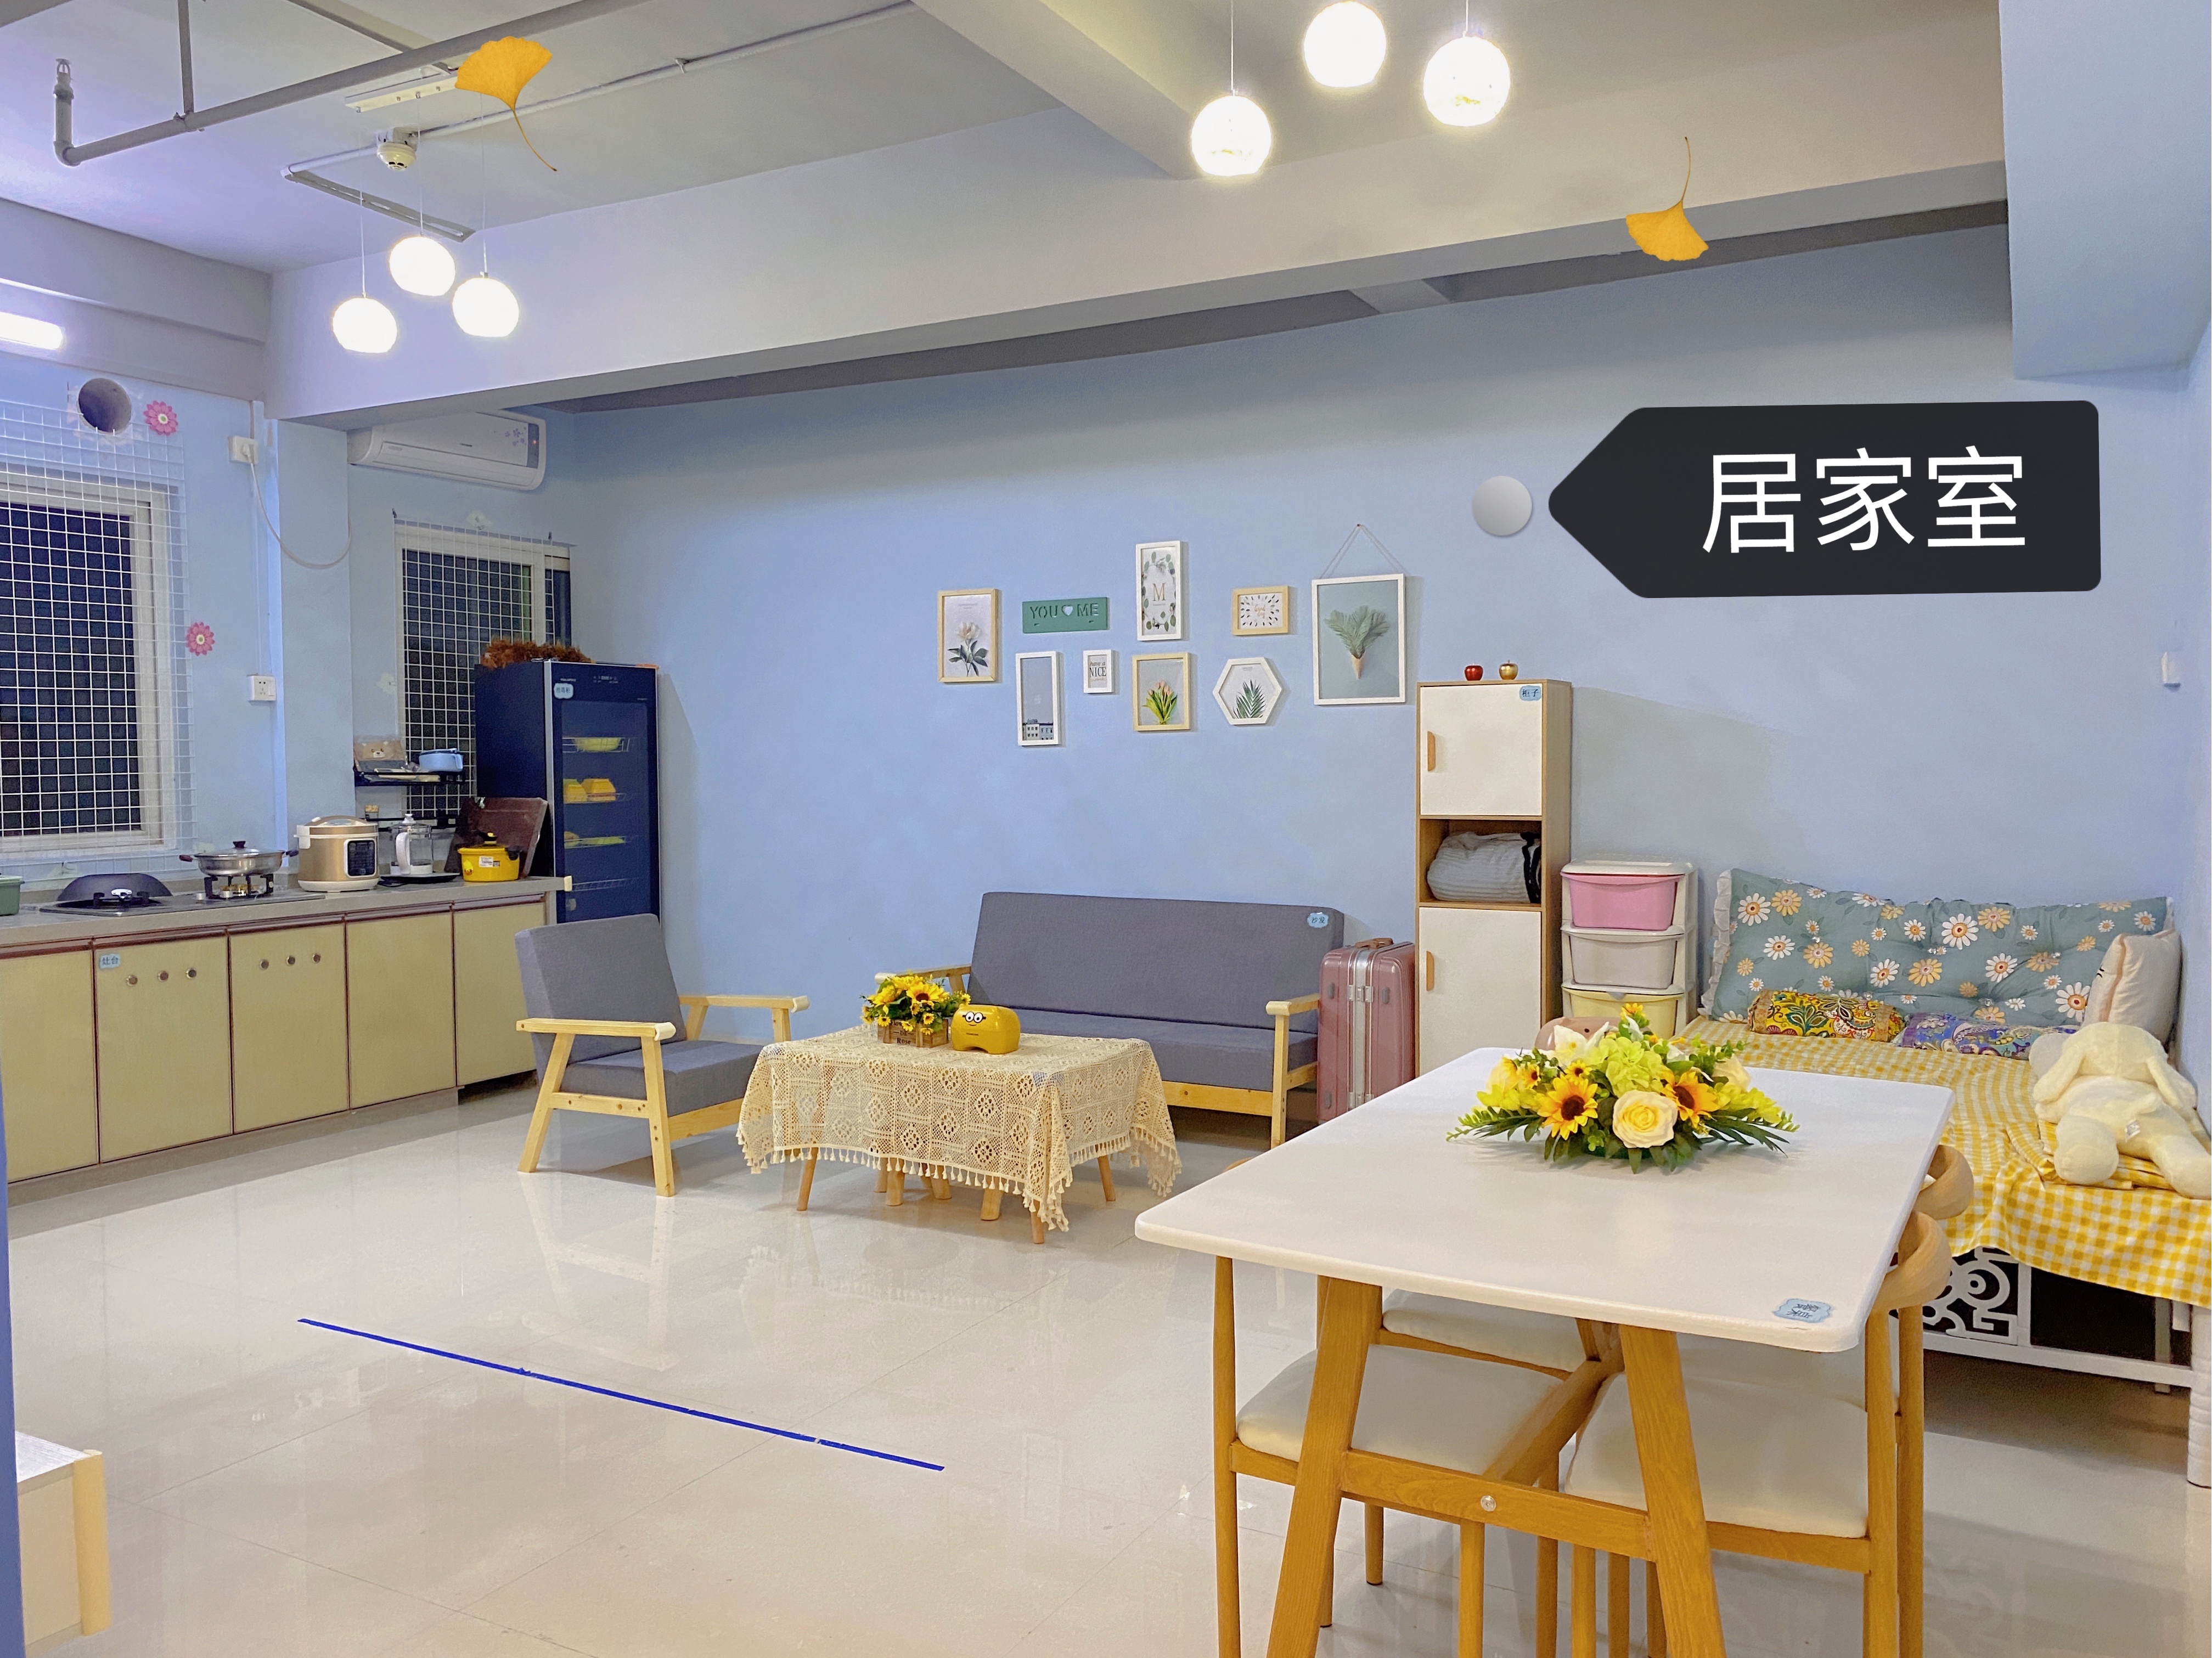 惠东县星梦特殊儿童关爱中心。